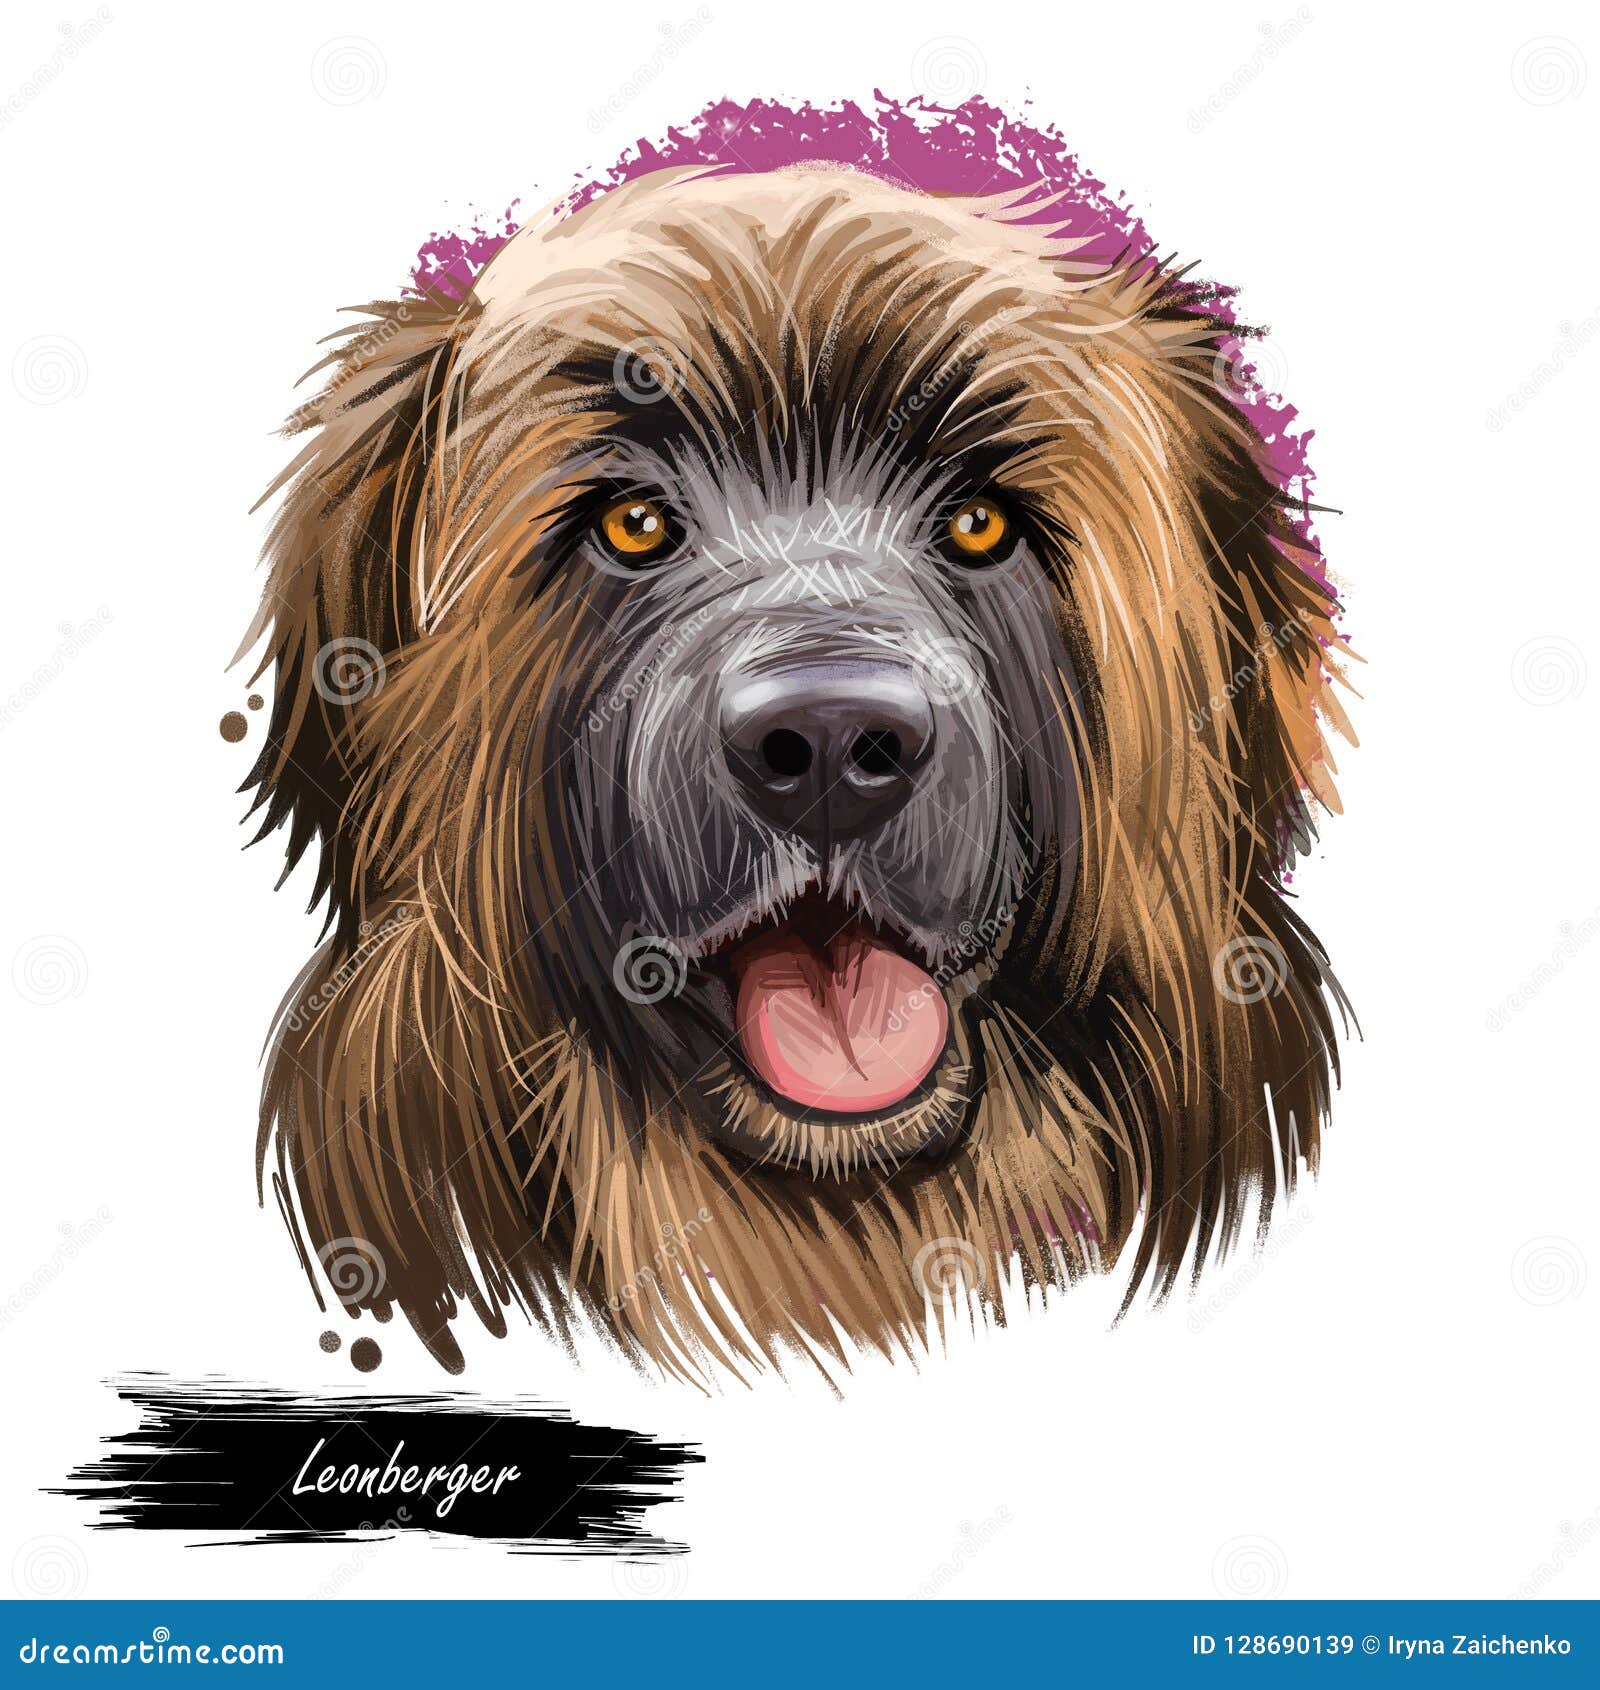 german mountain dog leonberger